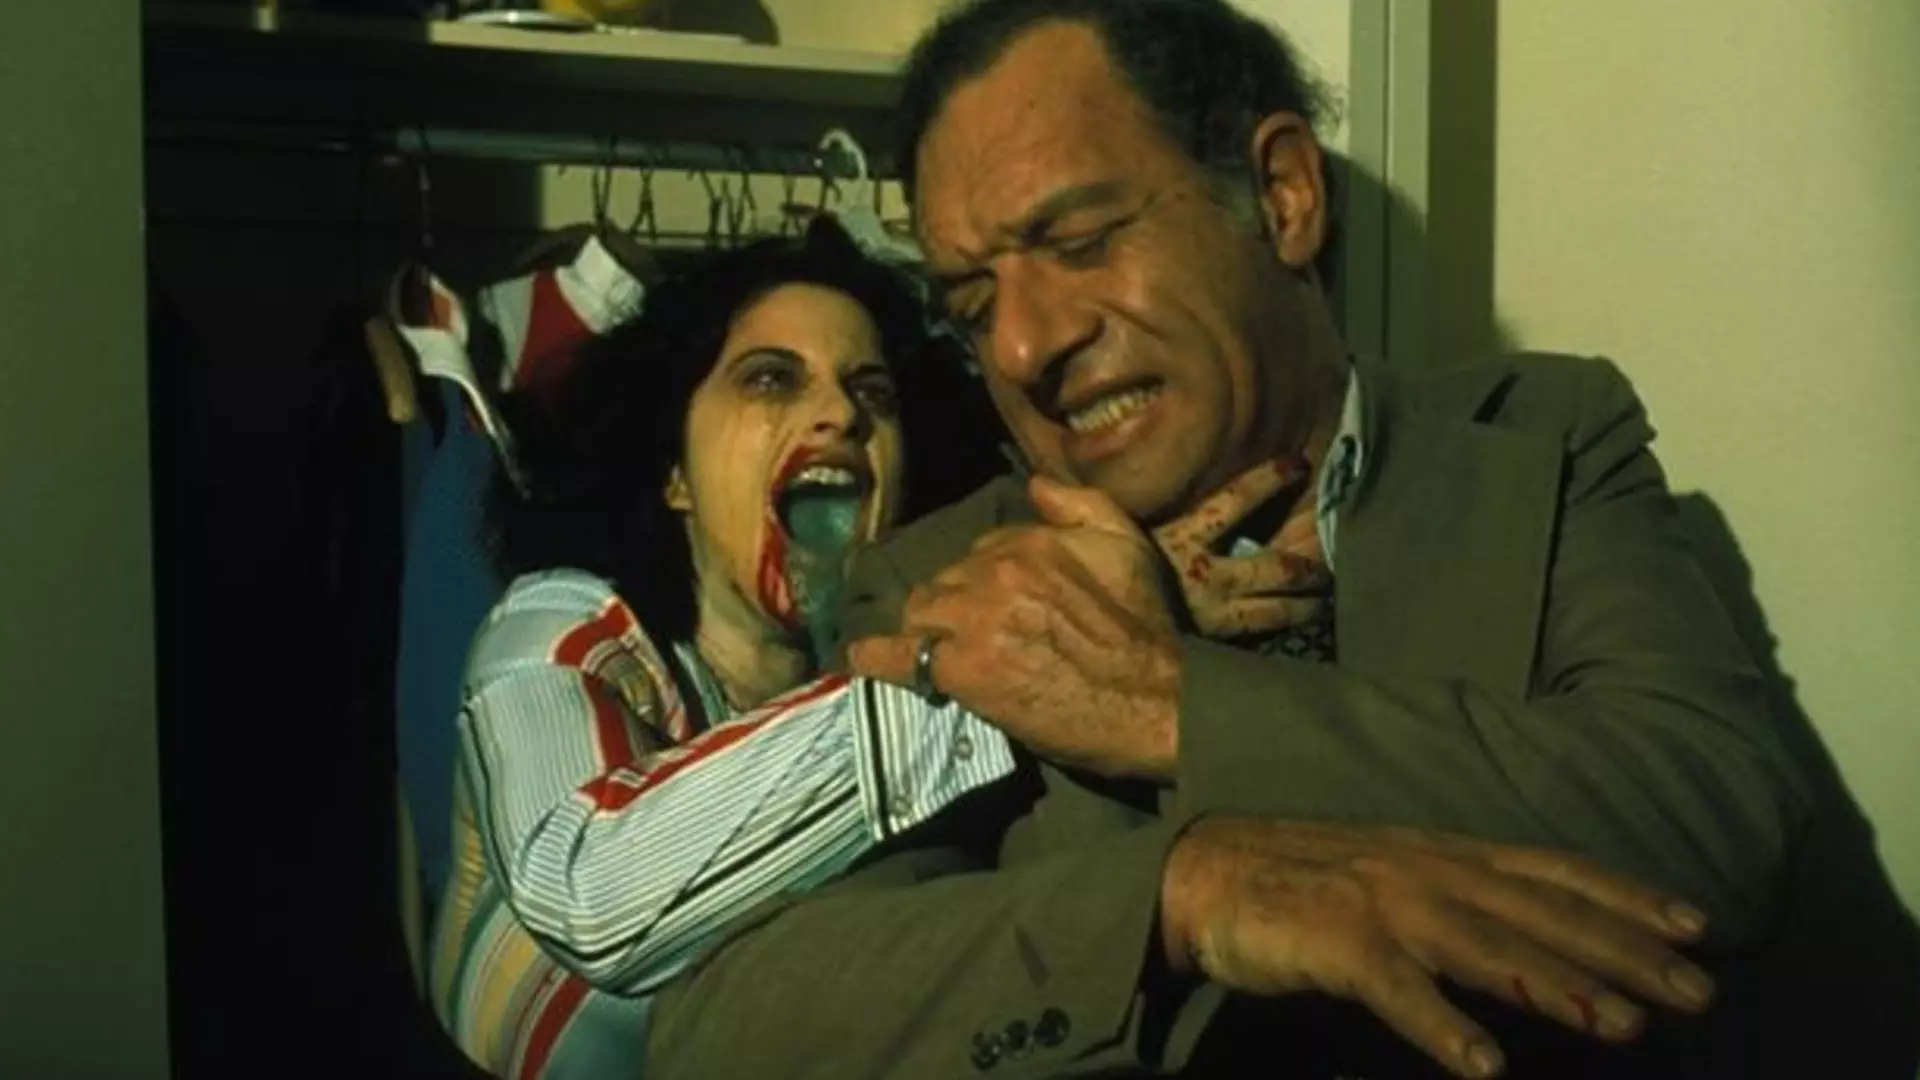 یک زامبی زن در حال حمله کردن به انسان مرد در فیلم Rabid